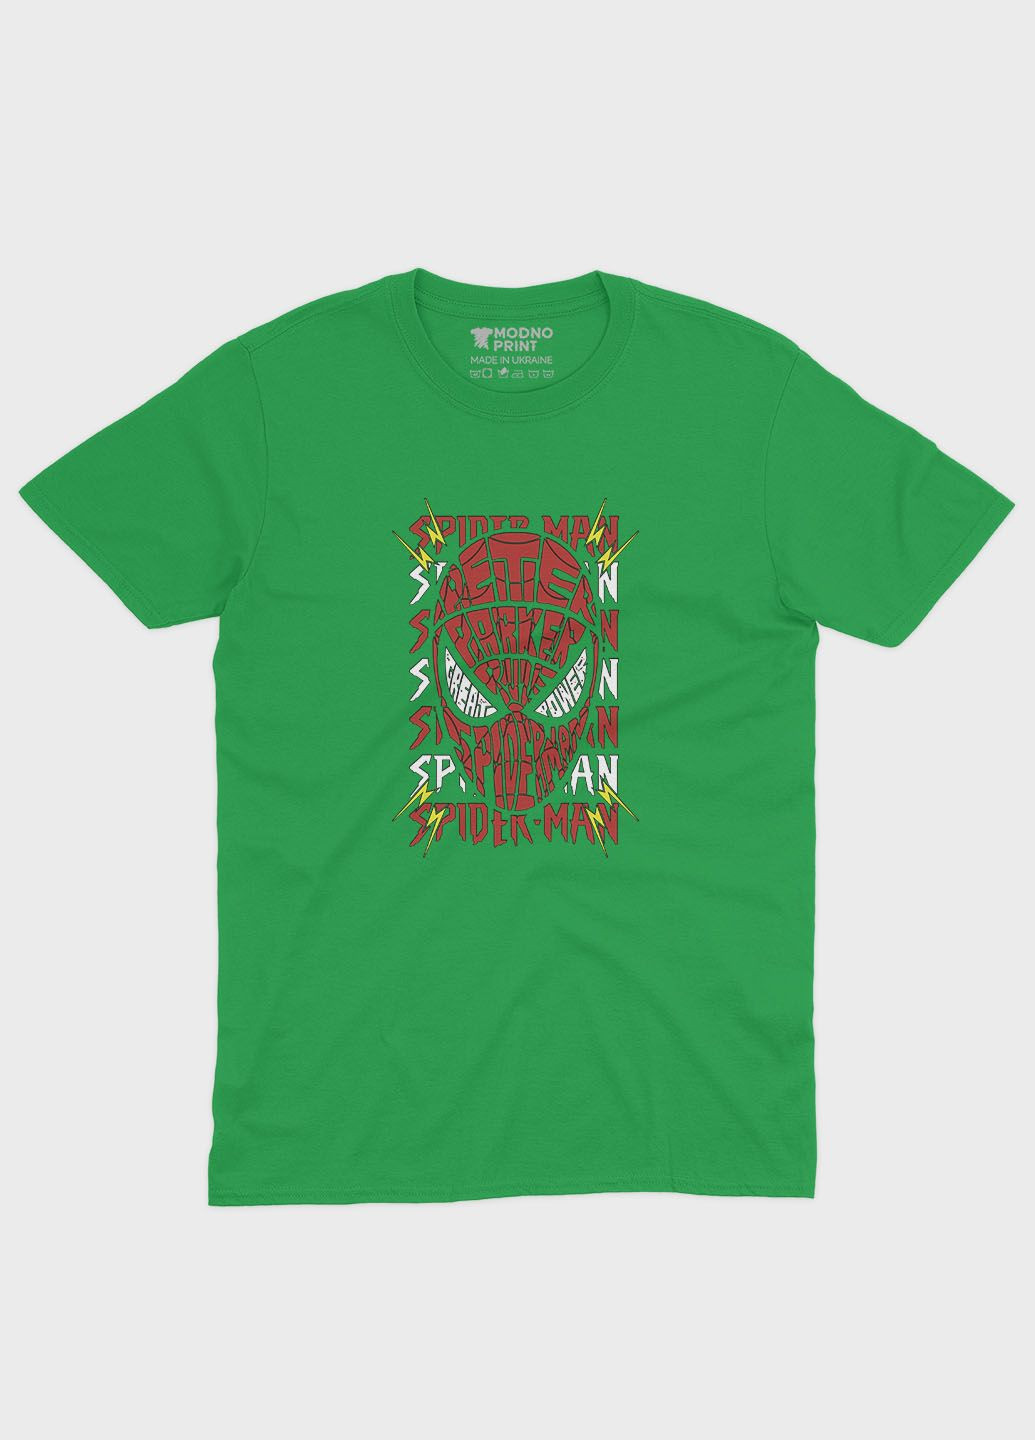 Зелена демісезонна футболка для хлопчика з принтом супергероя - людина-павук (ts001-1-keg-006-014-031-b) Modno